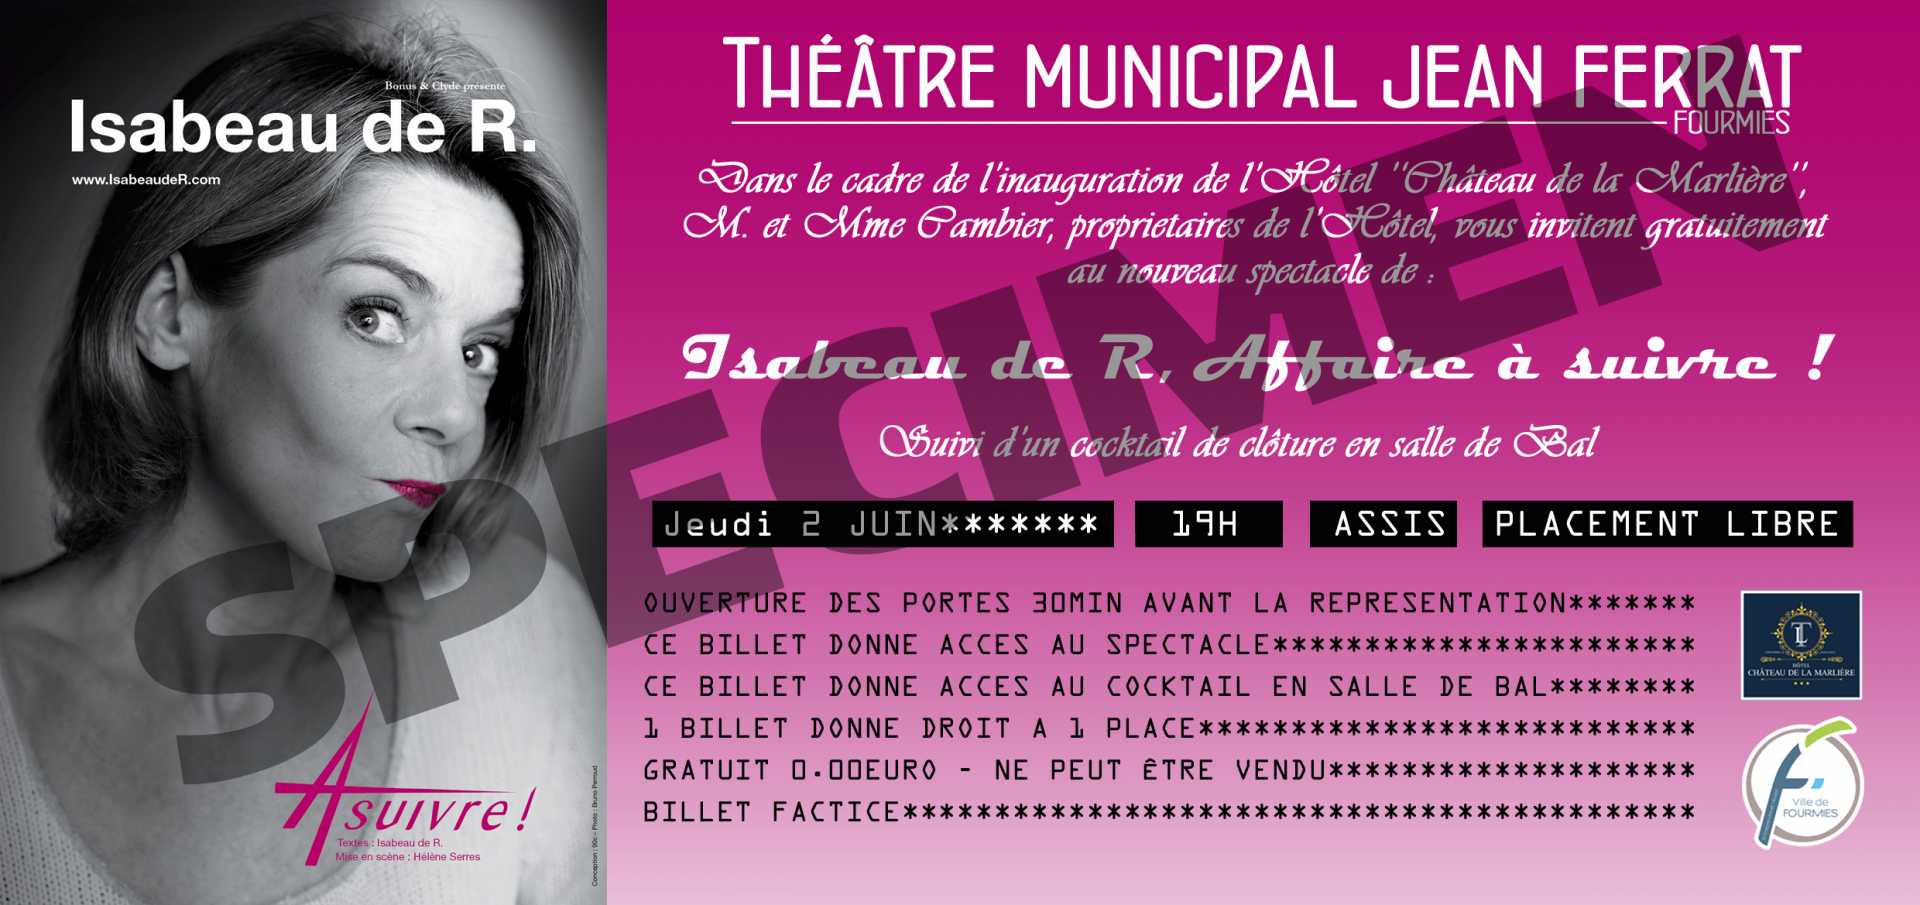 Spectacle les 2 et 3 juin 2016 au Théâtre Jean Ferrat.